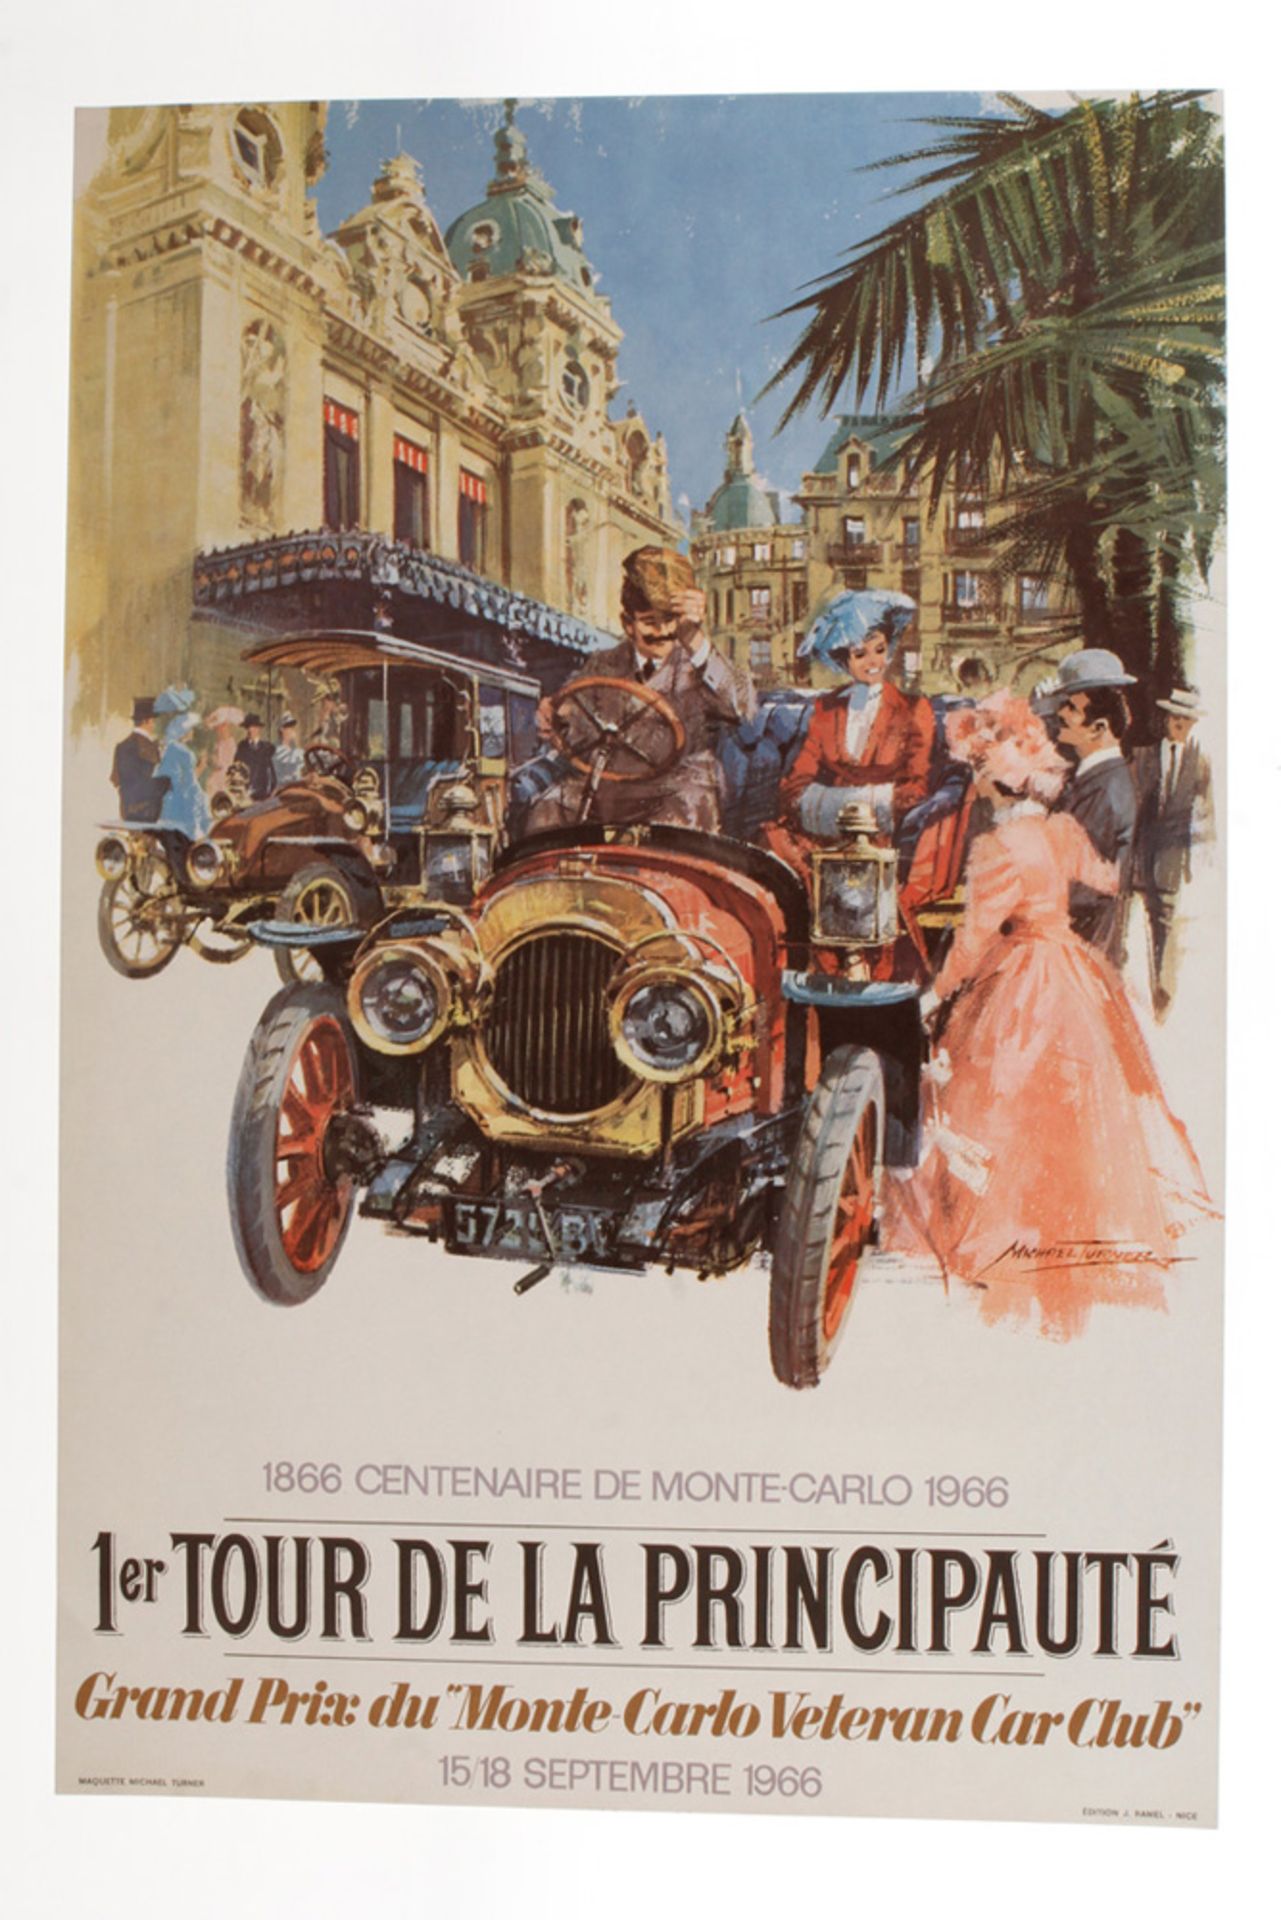 Orginal Rennplakat, 15/18 Septembre 1966,  1. Tour de la Principaute, Grand Prix du "Monte-Carlo